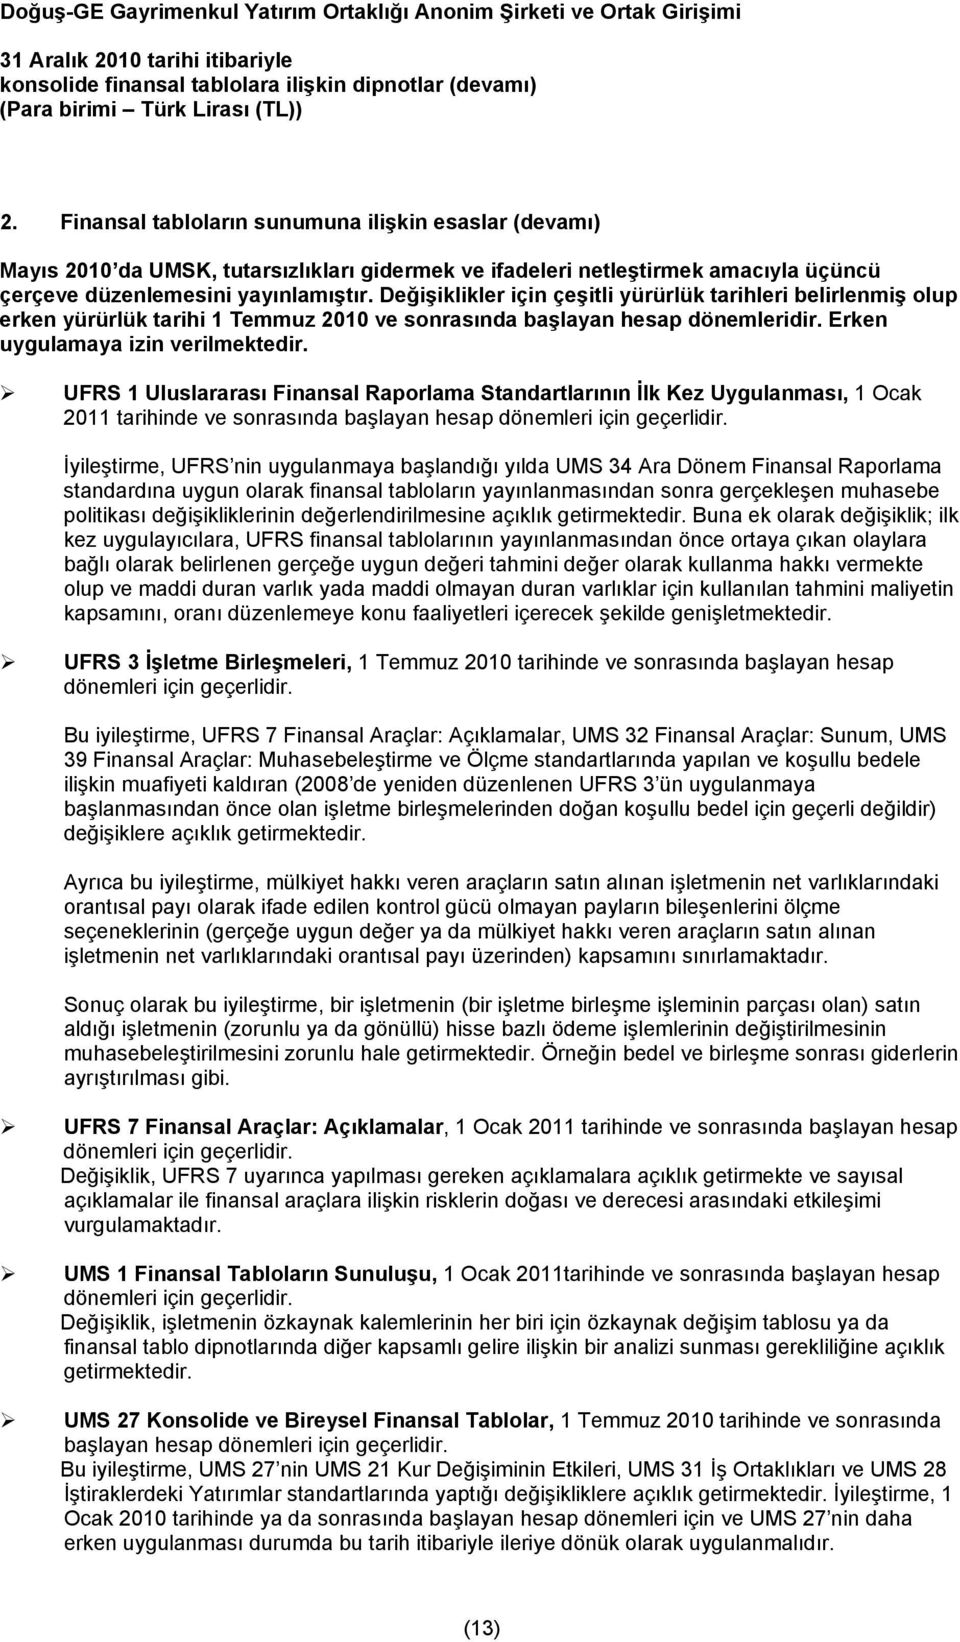 UFRS 1 Uluslararası Finansal Raporlama Standartlarının İlk Kez Uygulanması, 1 Ocak 2011 tarihinde ve sonrasında başlayan hesap dönemleri için geçerlidir.